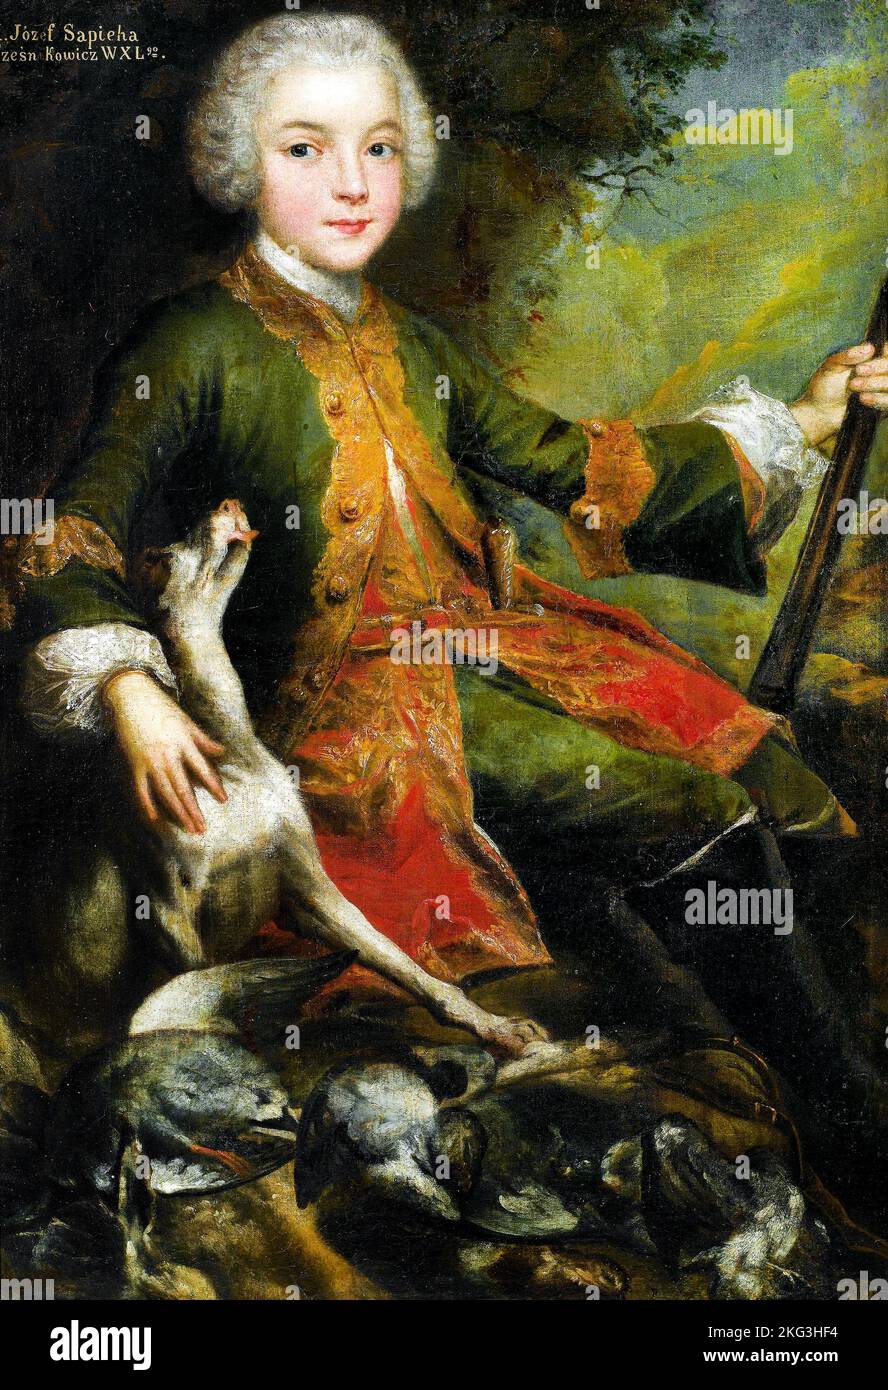 Augustyn Mirys; Porträt von Jozef Sapieha; 1740; Öl auf Leinwand; King John III Palace Museum, Warschau, Polen. Stockfoto